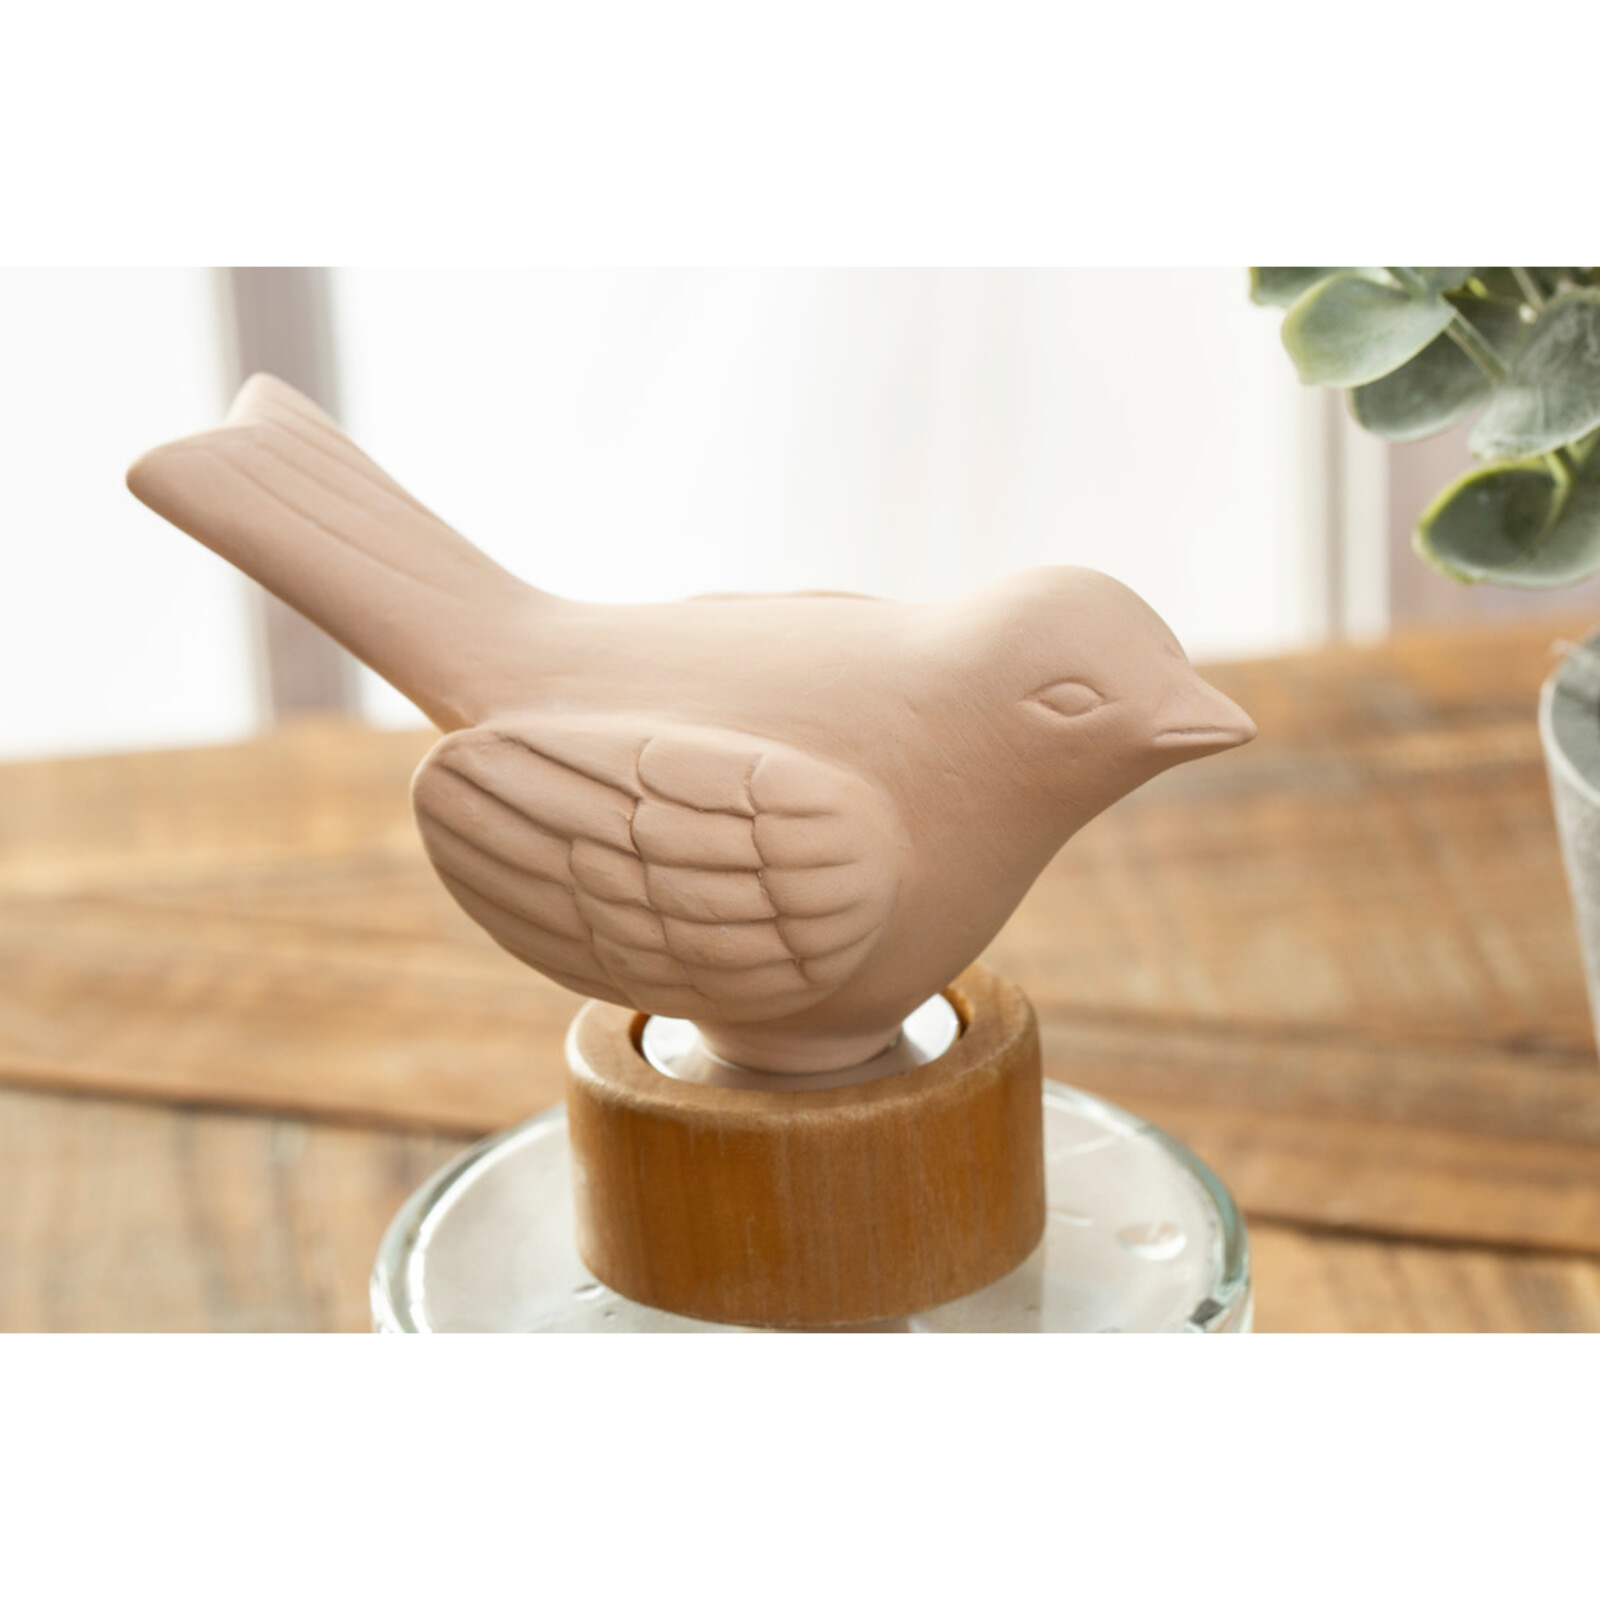 Evergreen Enterprises Ceramic Bird Diffuser   7DF024 loading=